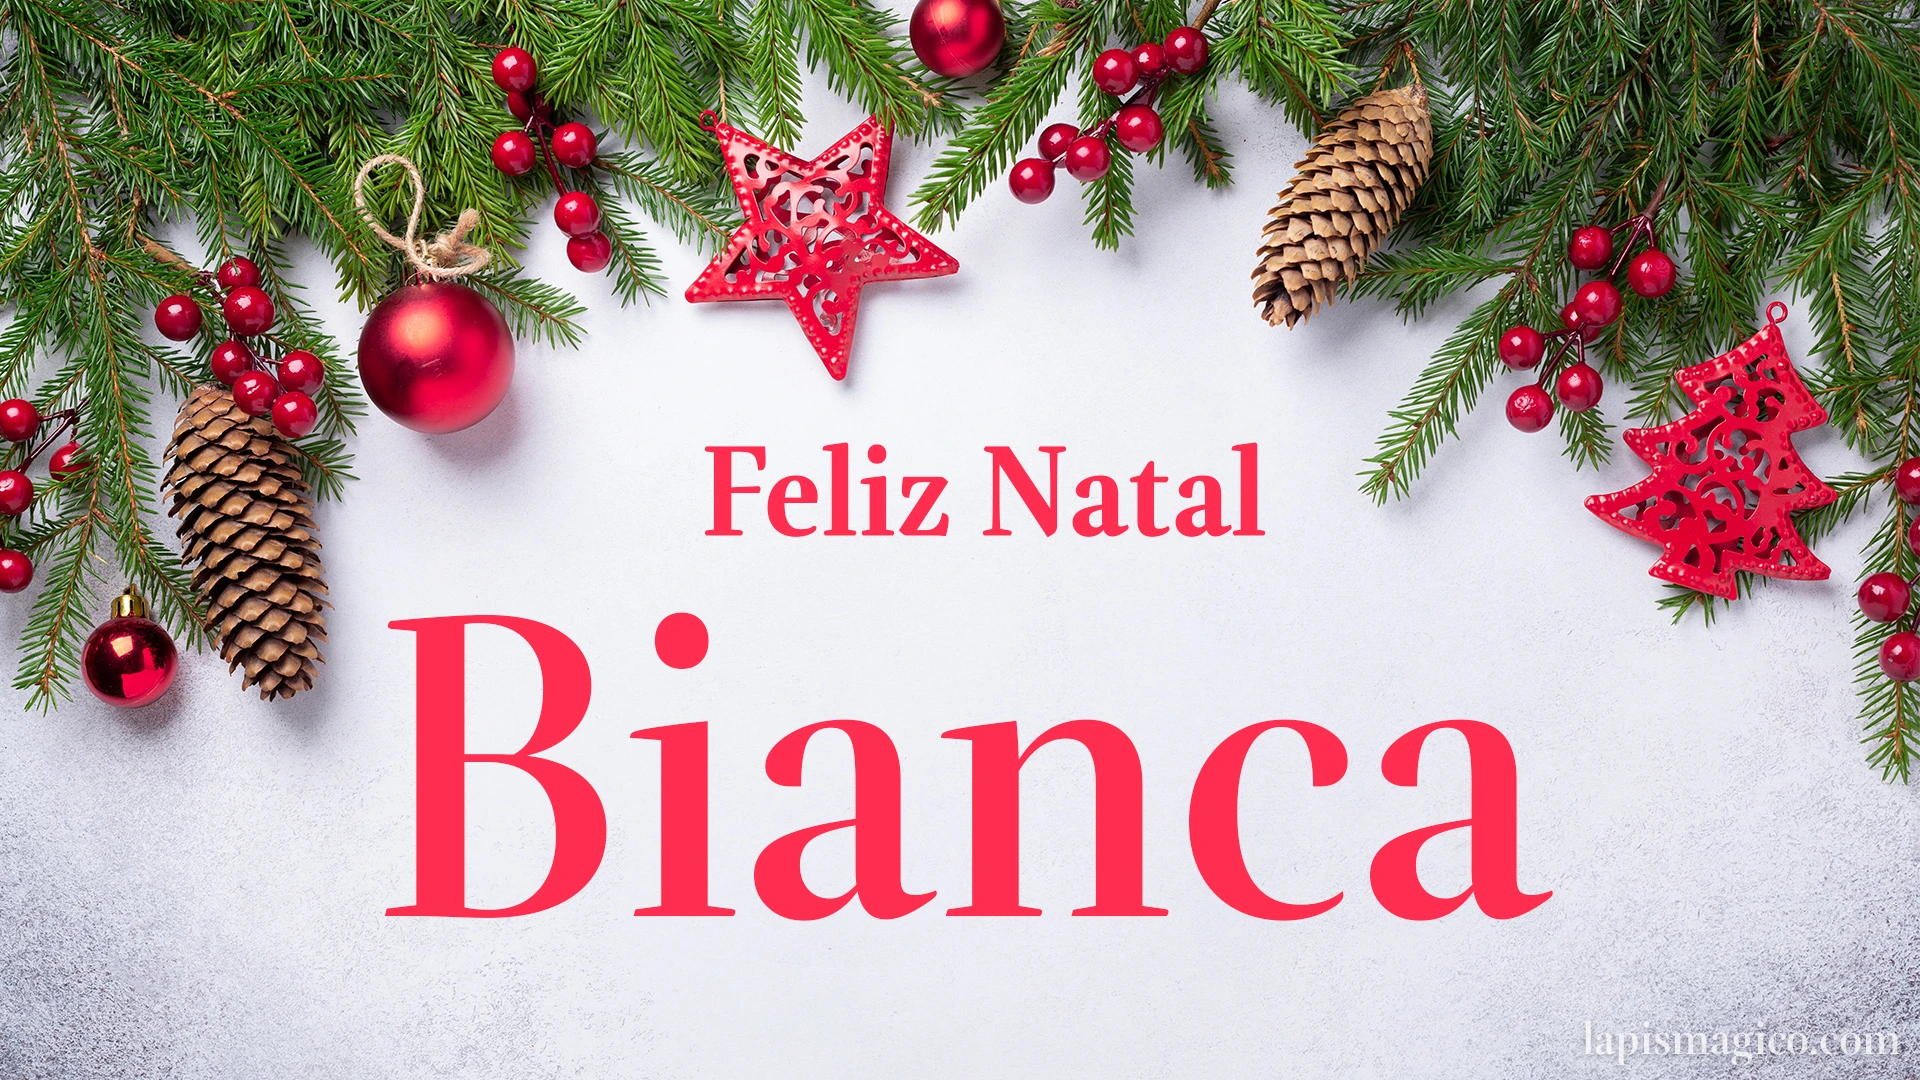 Oh Bianca, cinco postais de Feliz Natal Postal com o teu nome